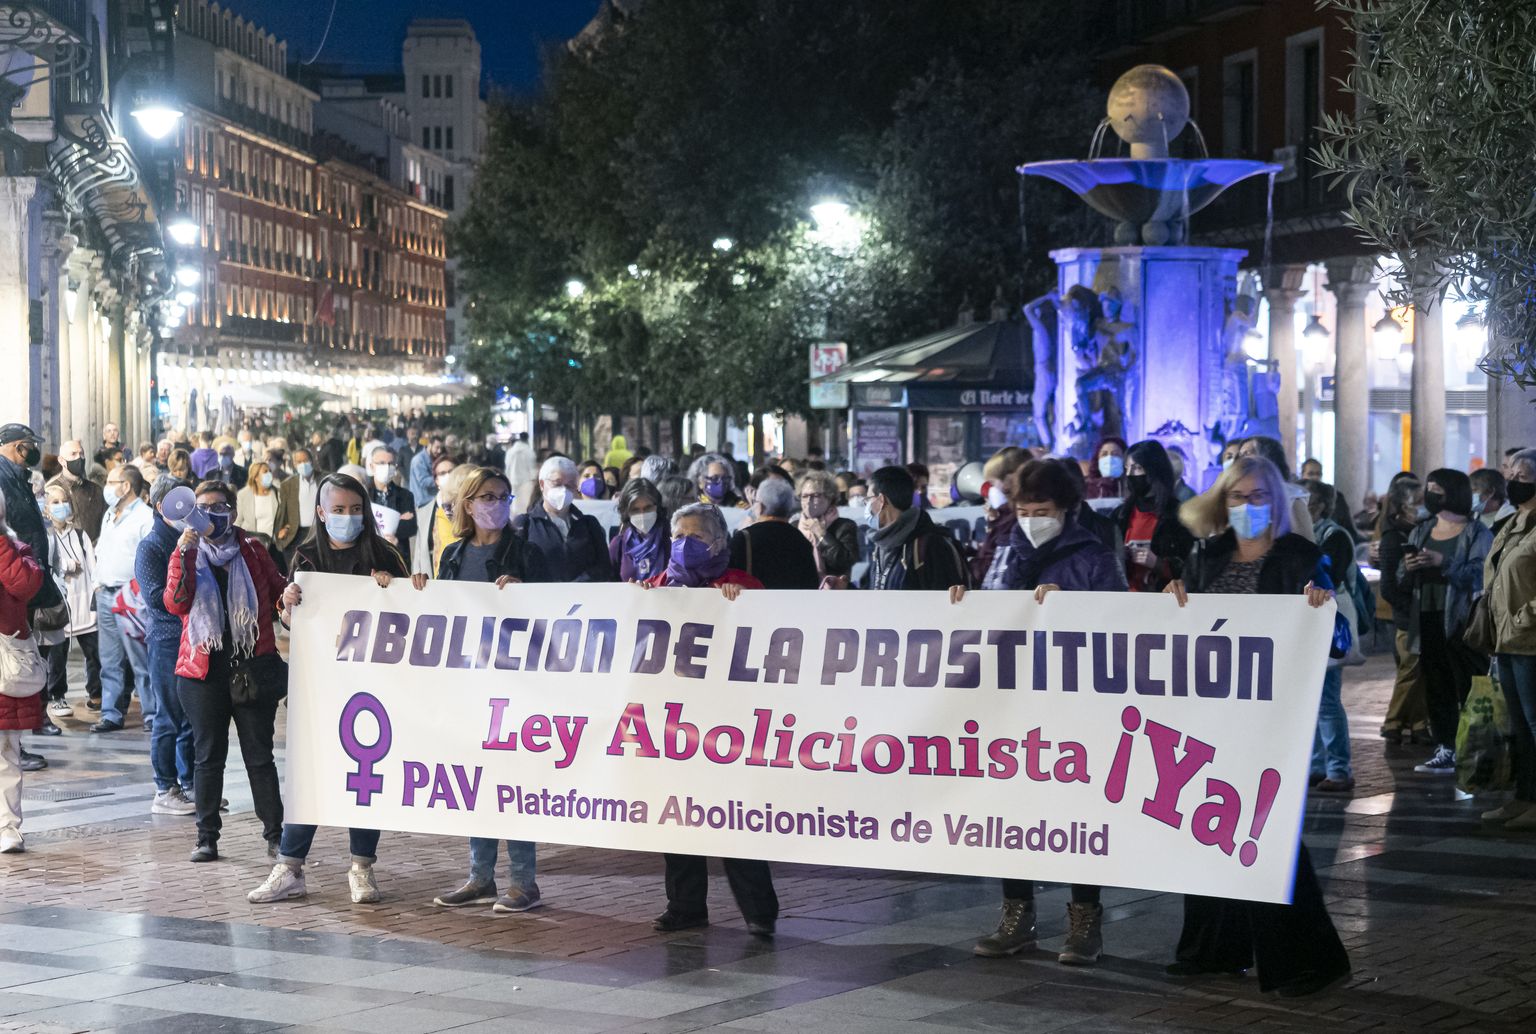 Prostitutsiooni keelustamise toetuseks korraldatud meeleavaldus Valladolidis.